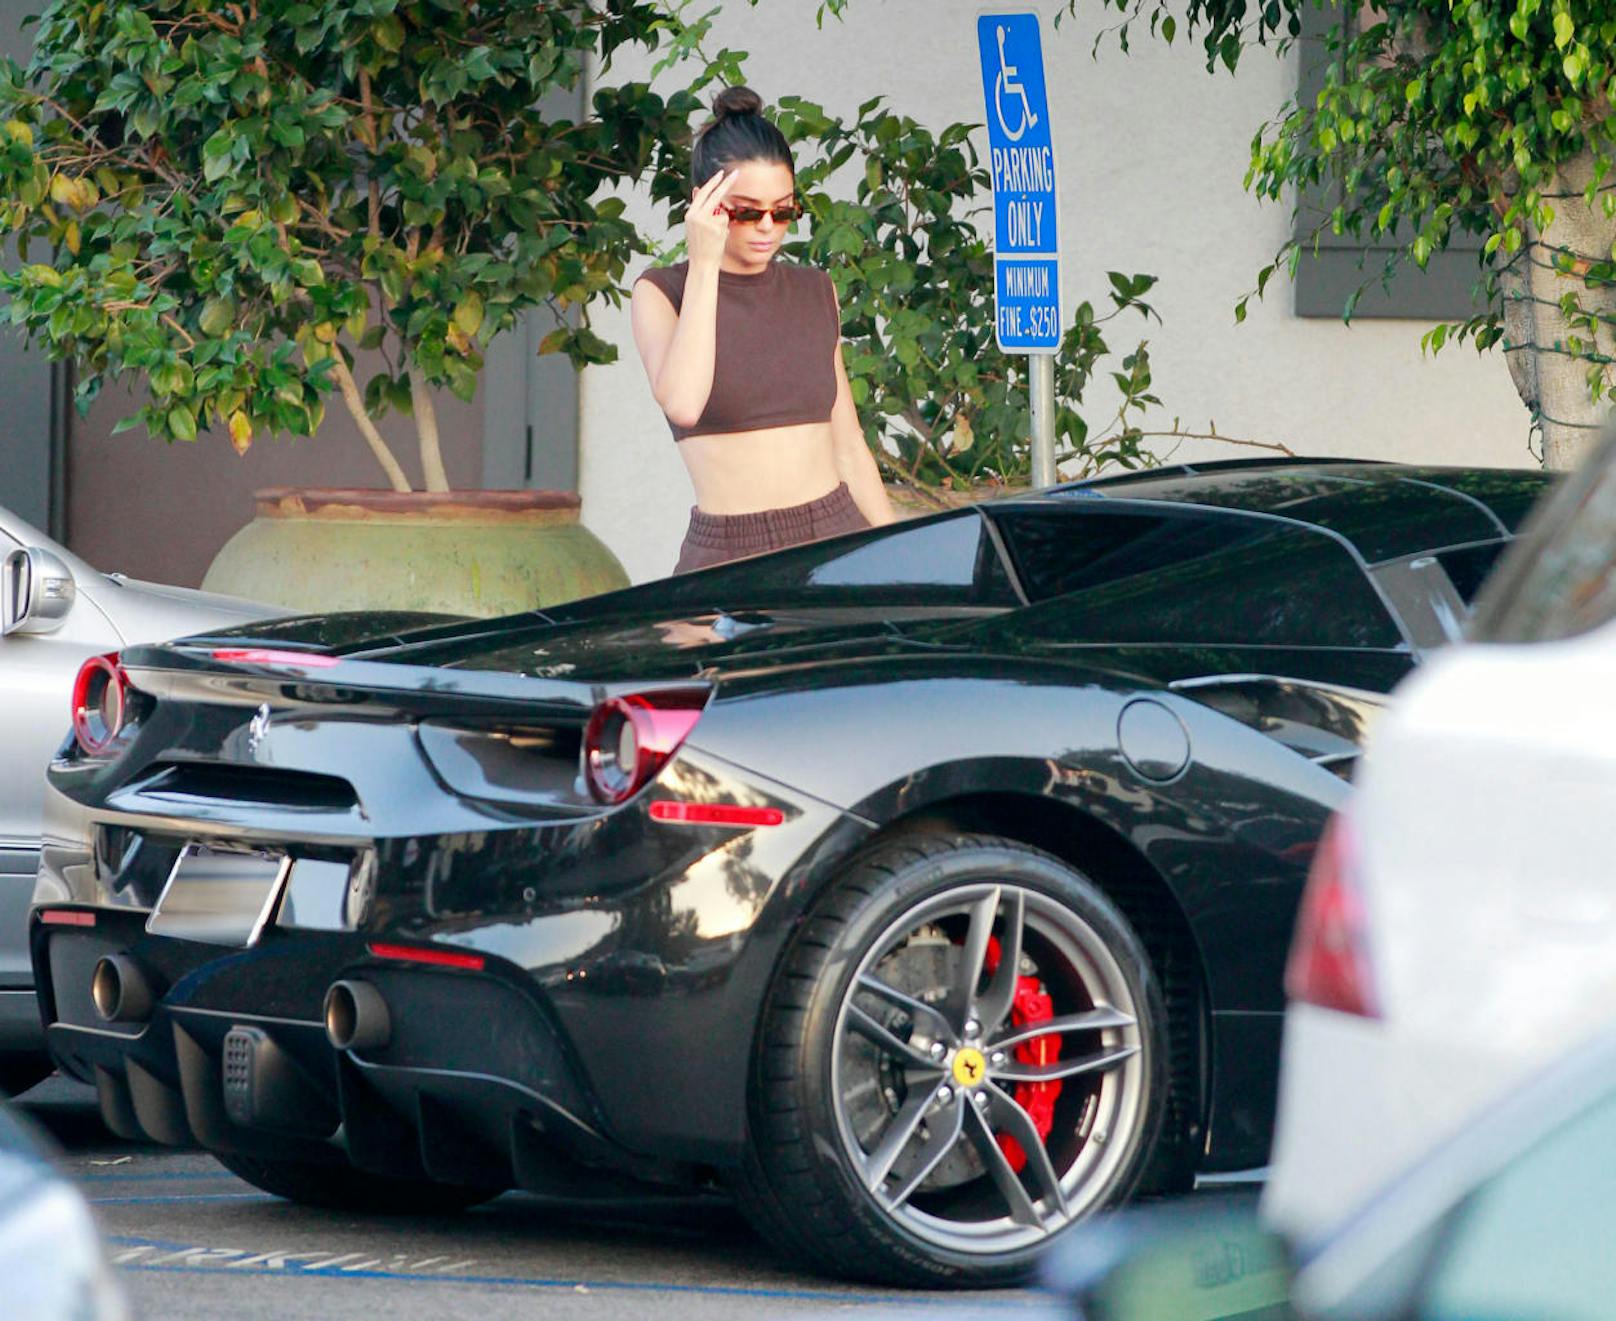 Versucht, sich vor den Paparazzi zu verstecken: Kendall Jenner parkt mit ihrem Ferrari am Behindertenparkplatz vor einem Sushi-Lokal in Bel Air.